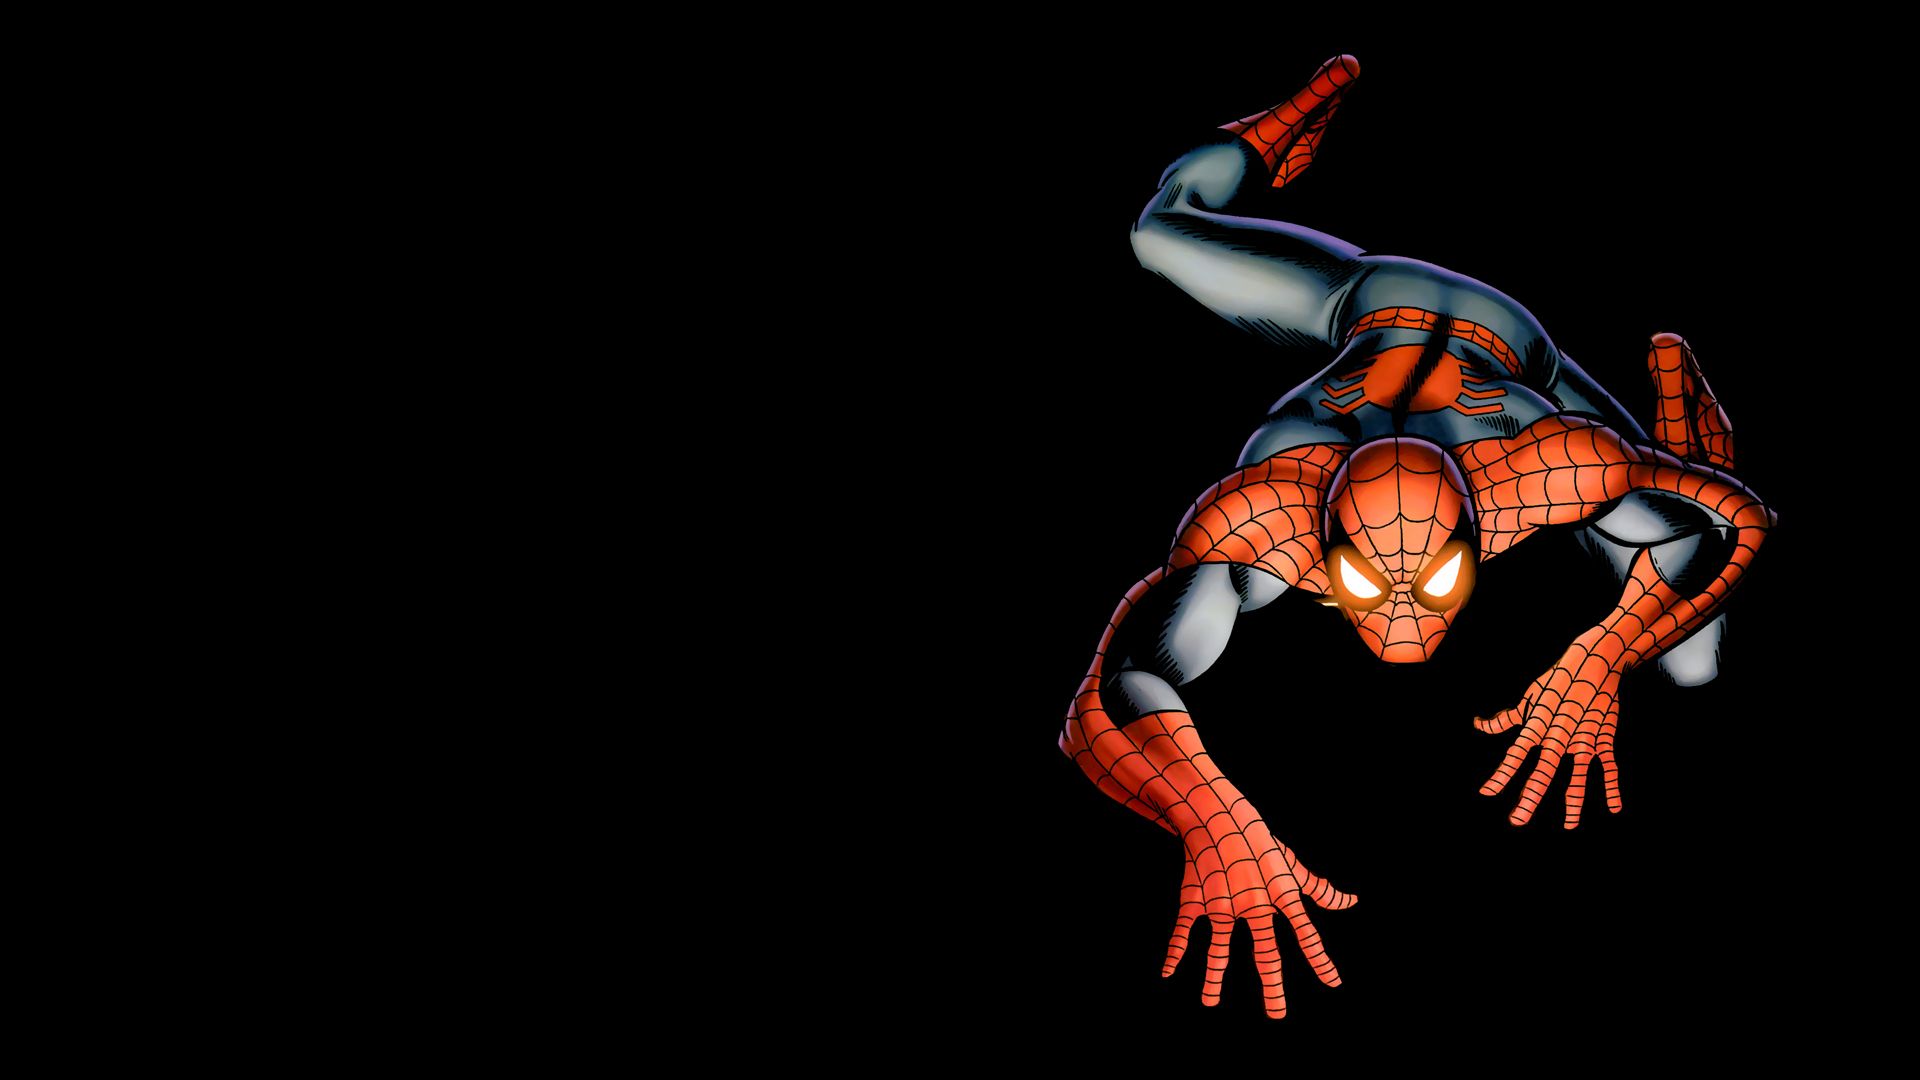 Spiderman HD Wallpaper 1920x1080 ID32445